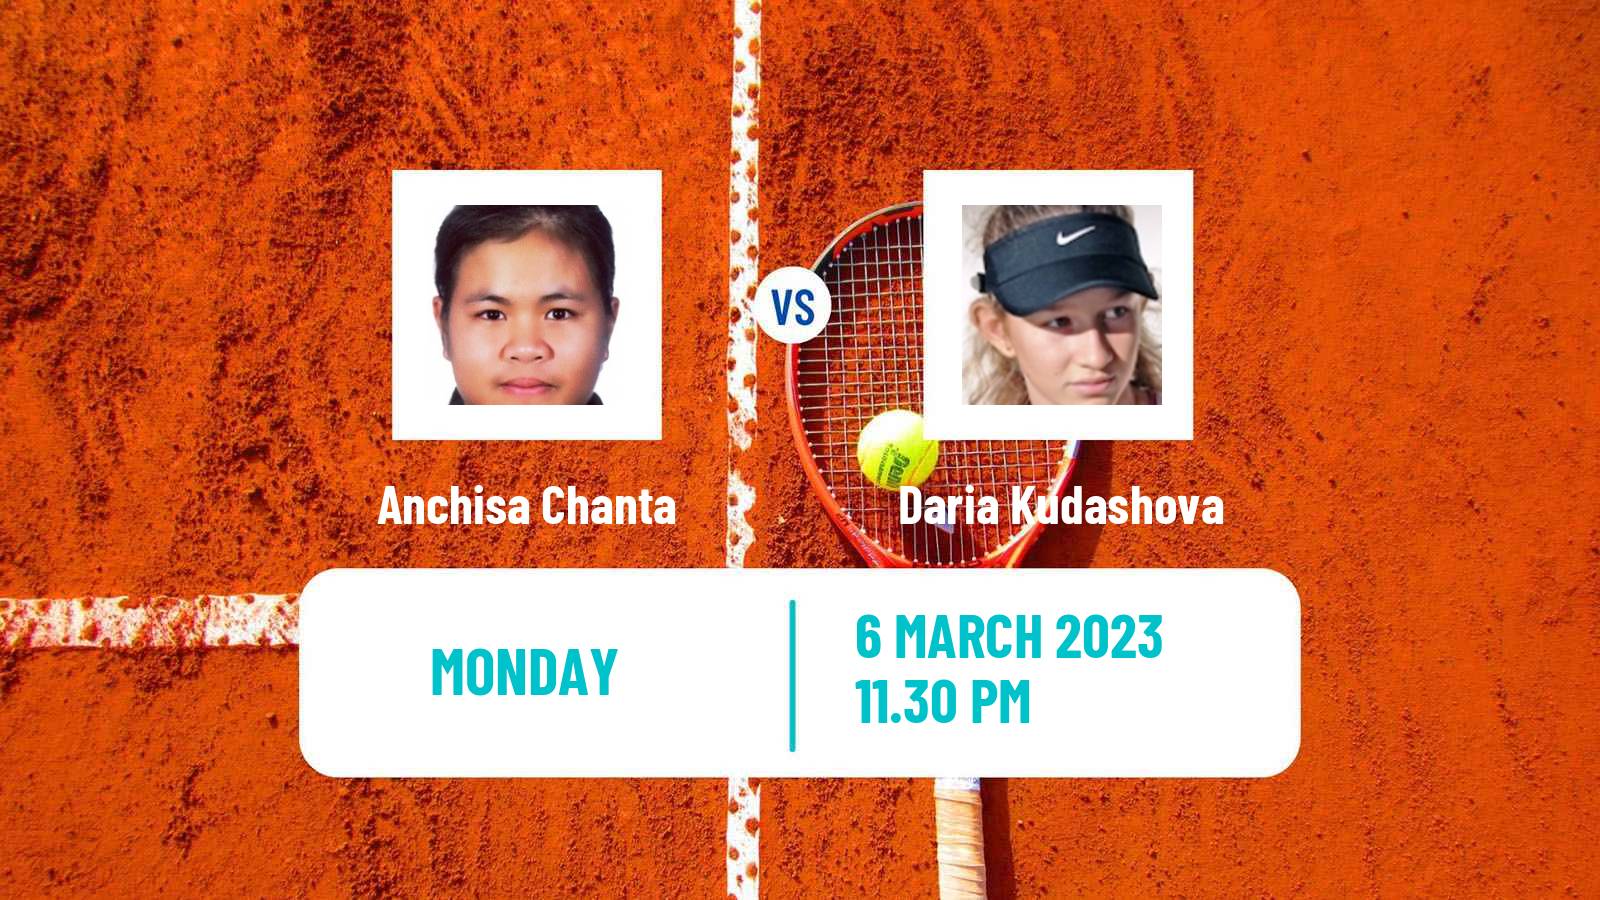 Tennis ITF Tournaments Anchisa Chanta - Daria Kudashova